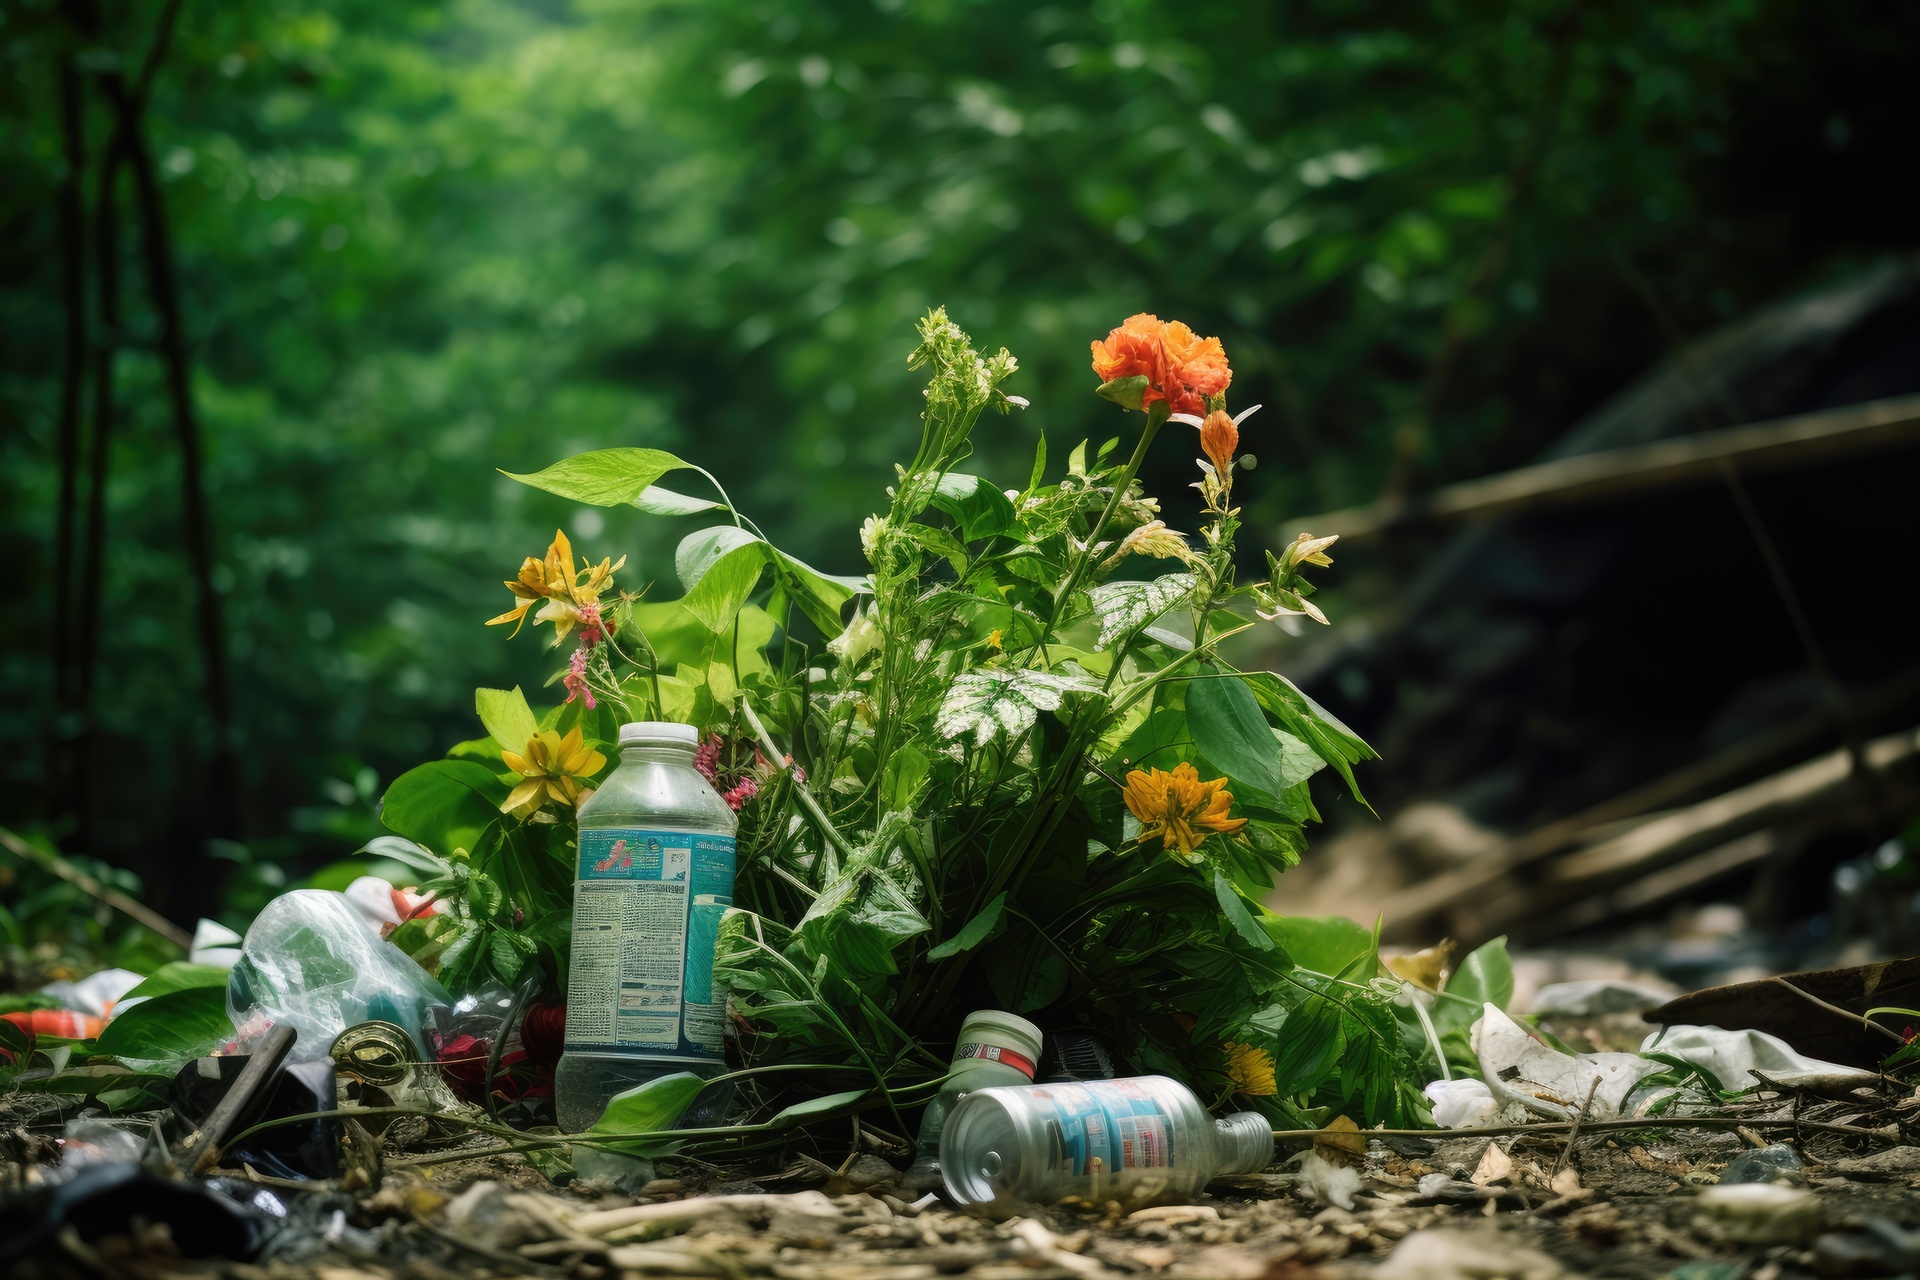 Plastikflaschen, Biomüll im Wald illegale Müllentsorgung